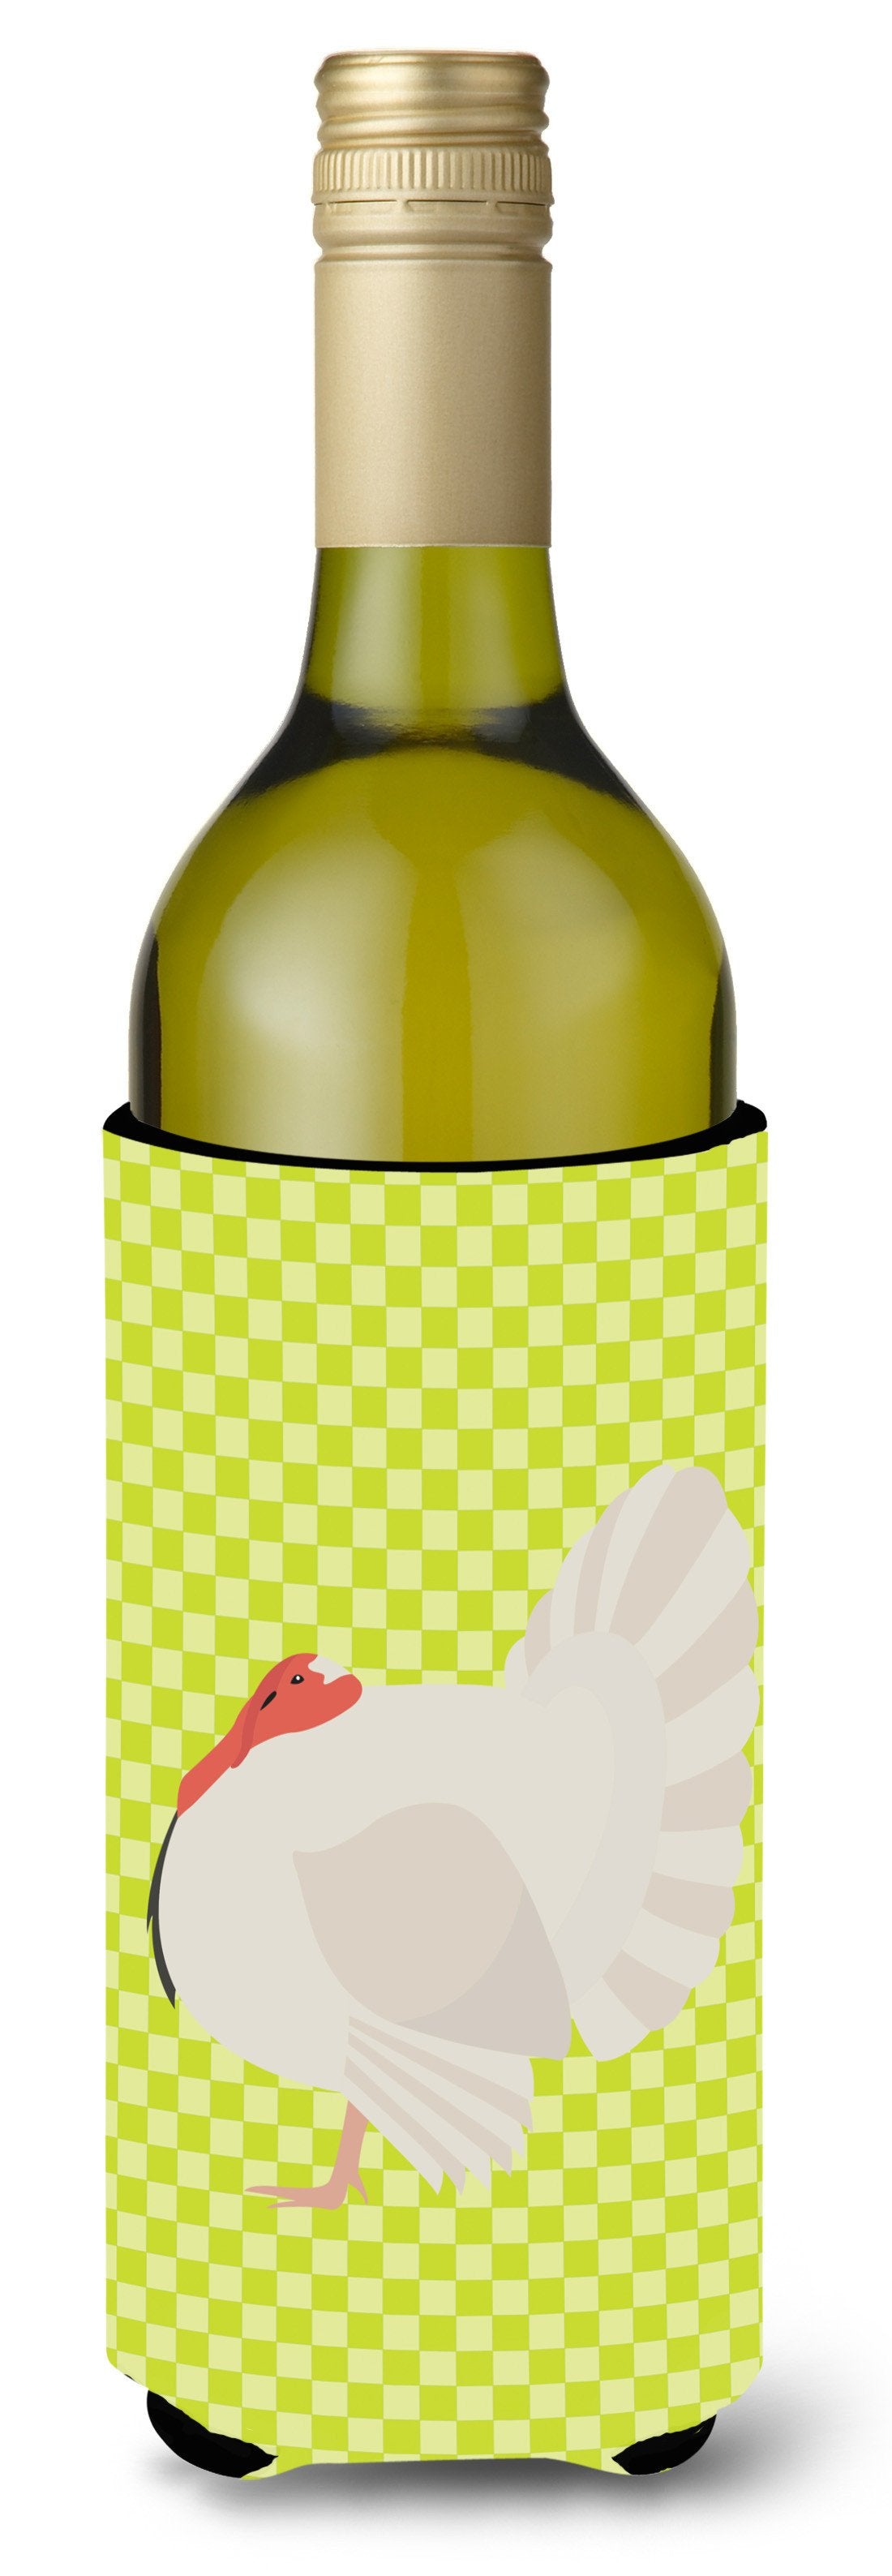 White Holland Turkey Green Wine Bottle Beverge Insulator Hugger BB7809LITERK by Caroline's Treasures